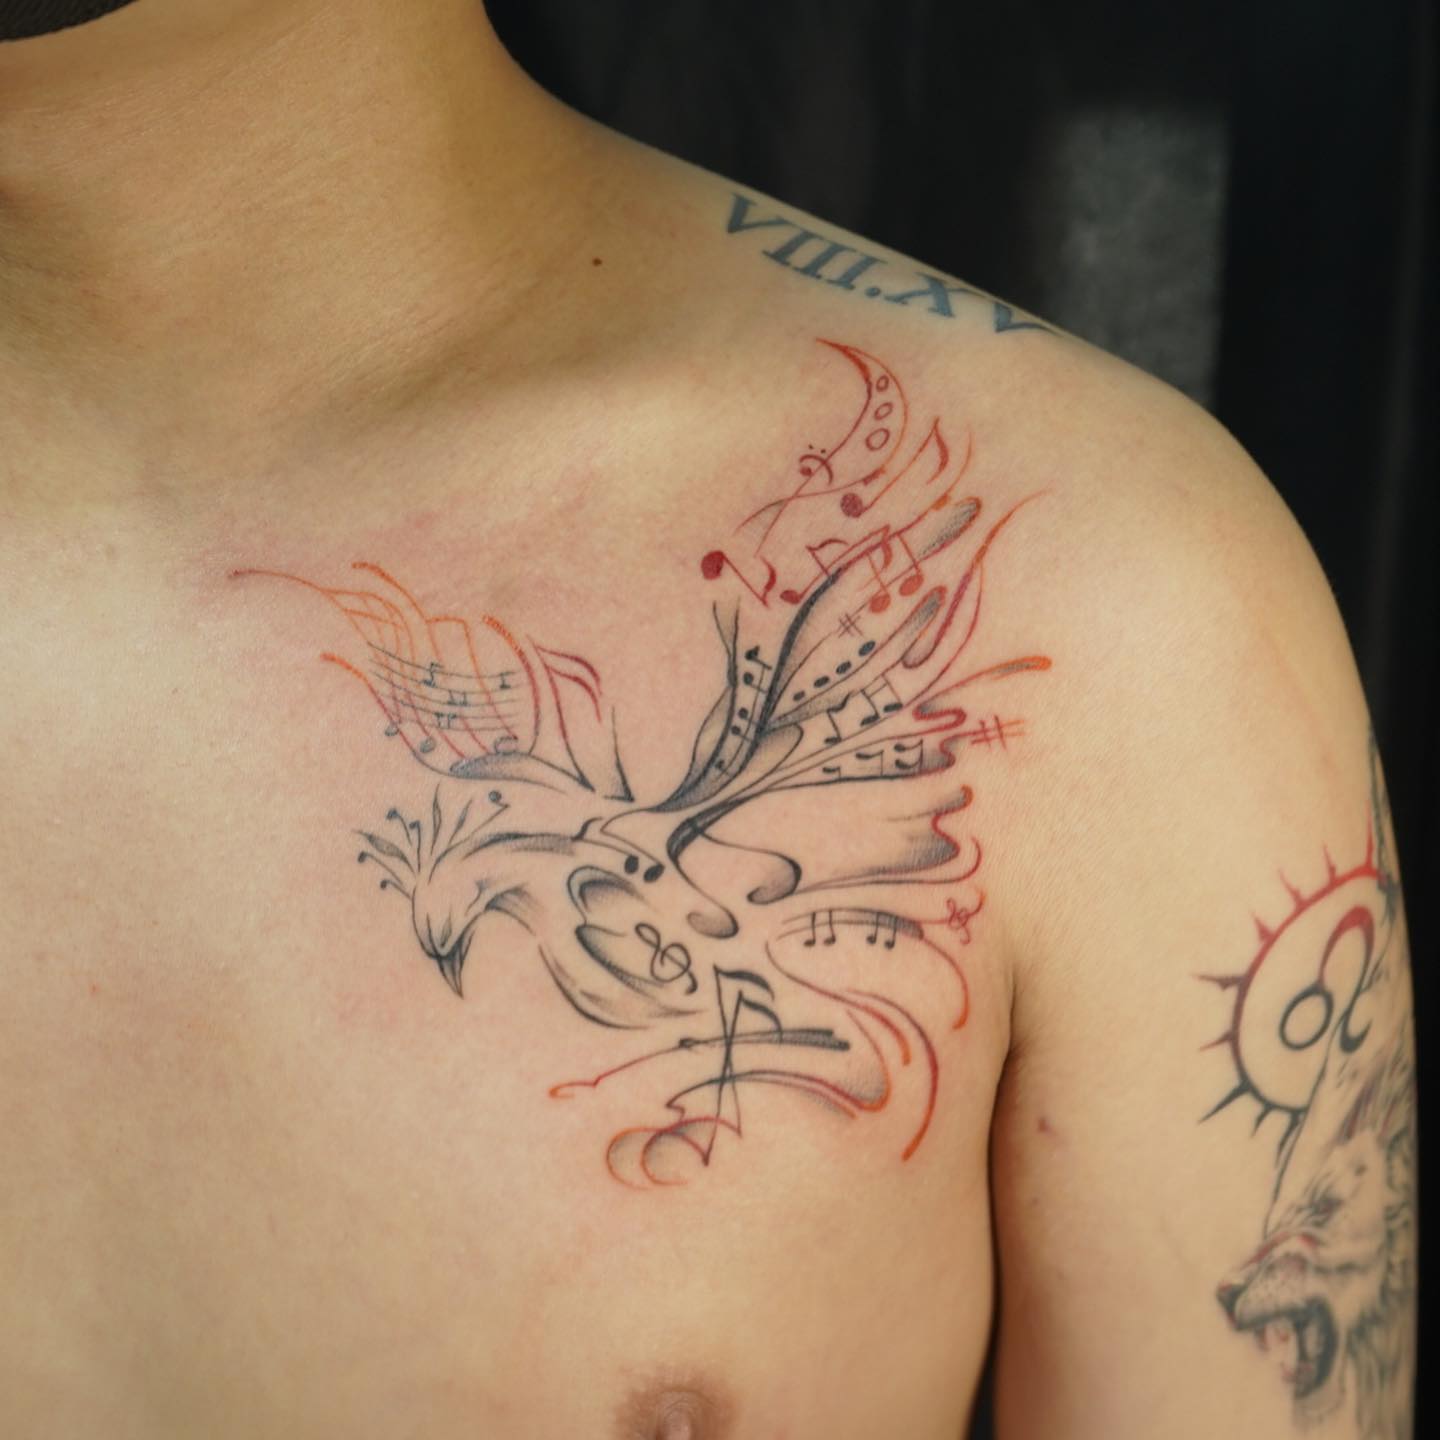 Tatuaje de paloma fresco en el pecho.